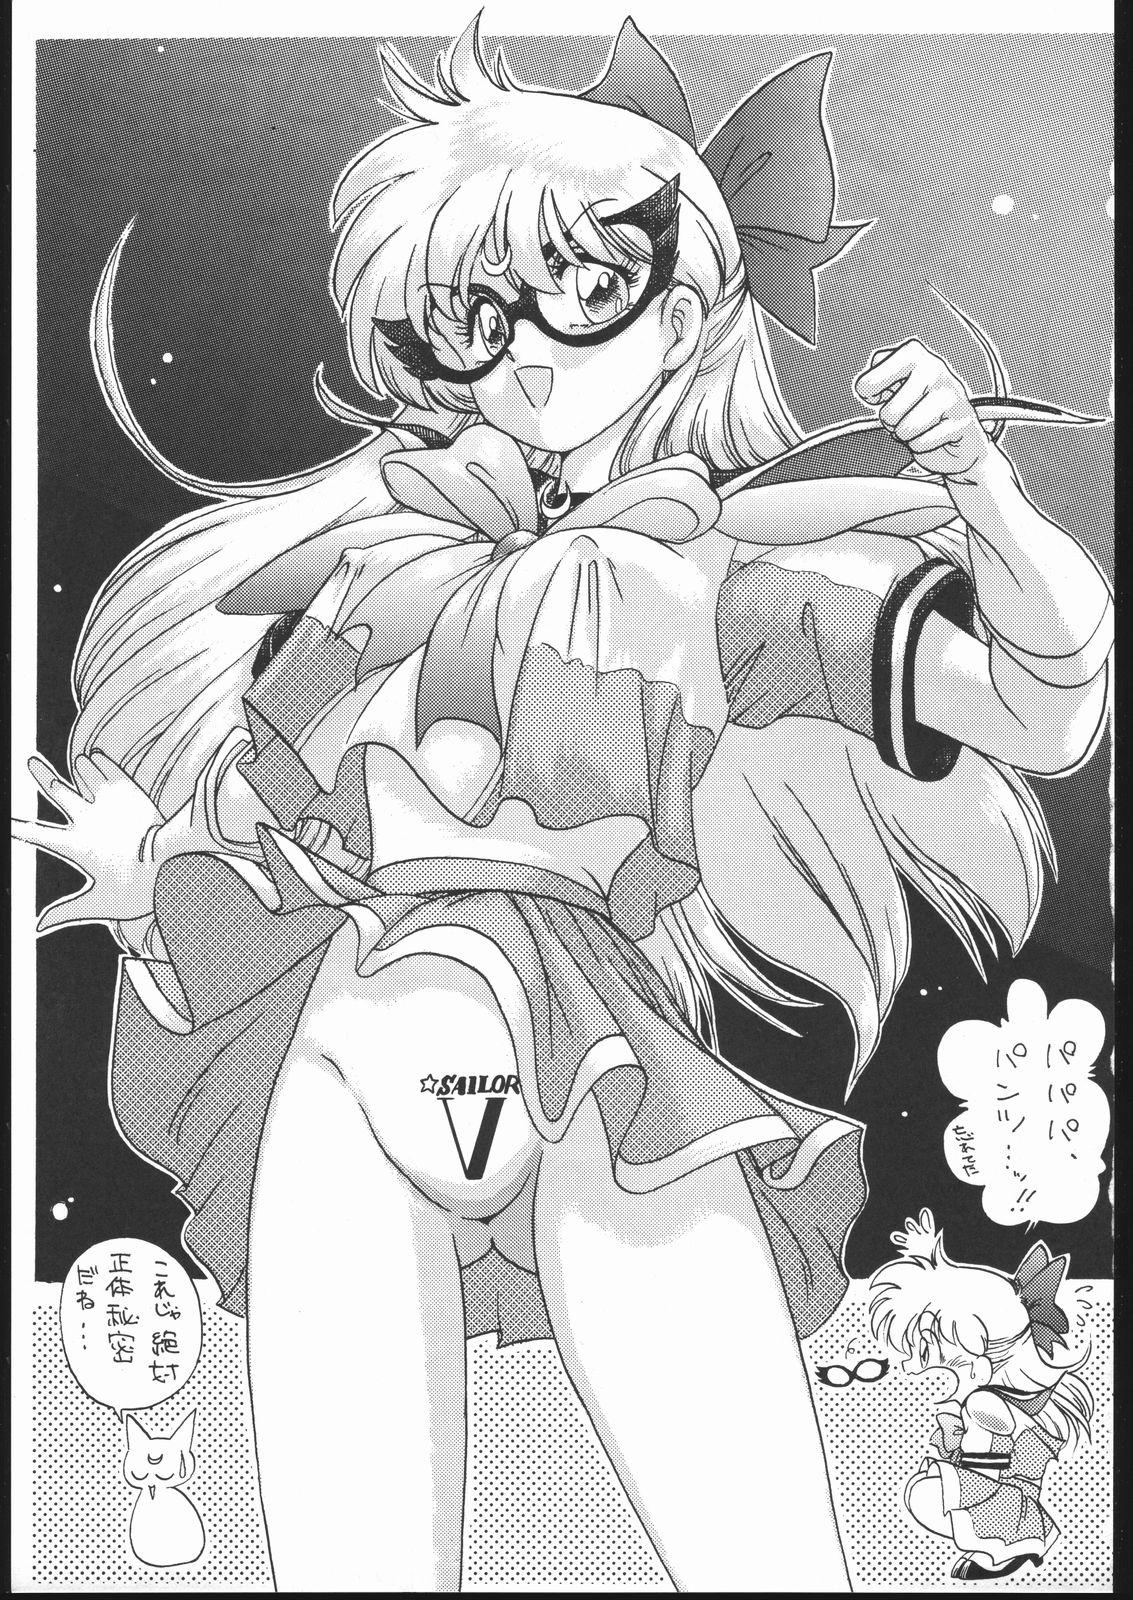 Punish Gekkou Endymion 2 - Sailor moon Nut - Page 2